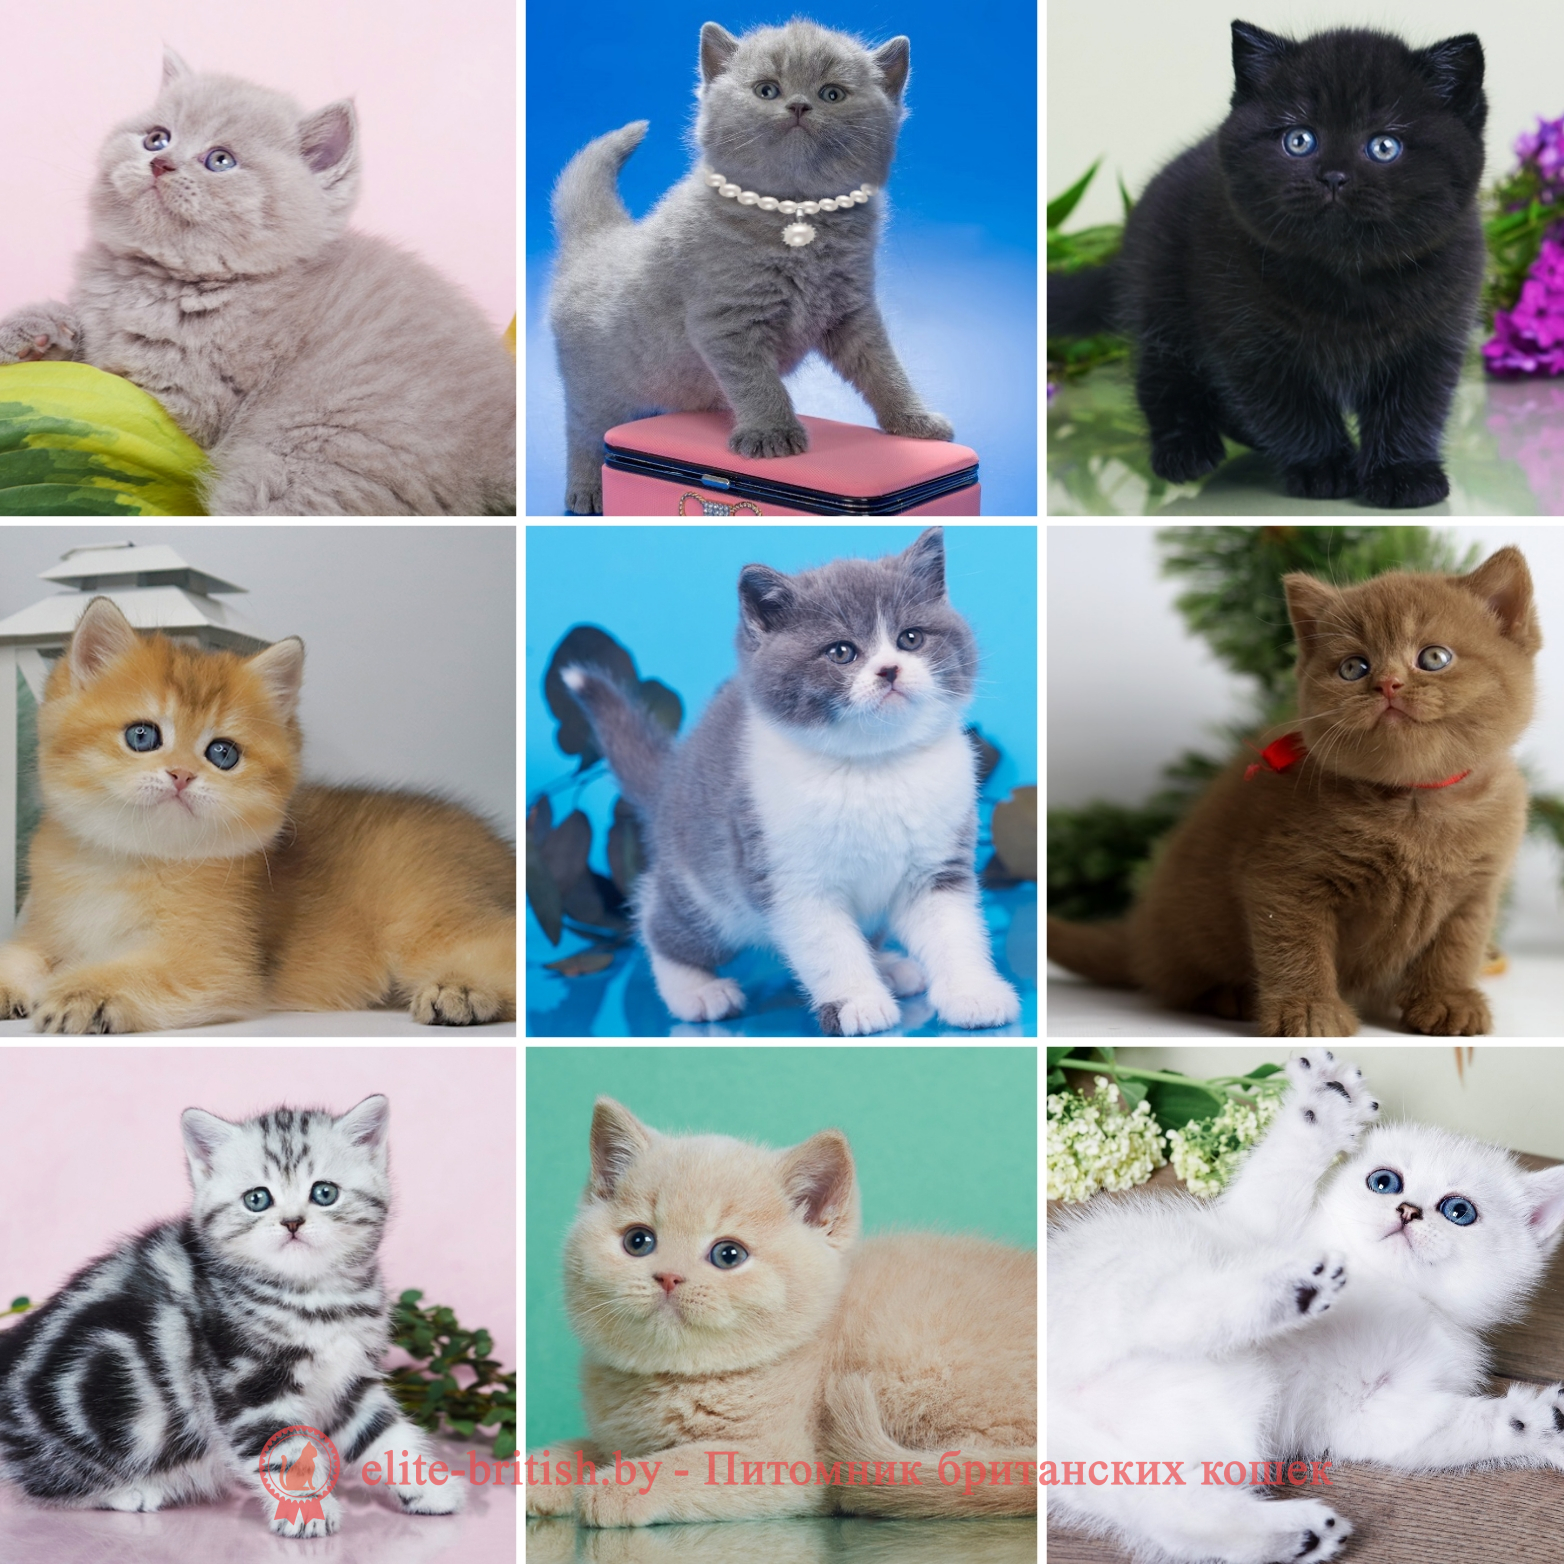 Купить британского котенка в Минске в питомнике: лиловые, голубые, шоколадные, мраморные, шиншиллы золотые и серебристые